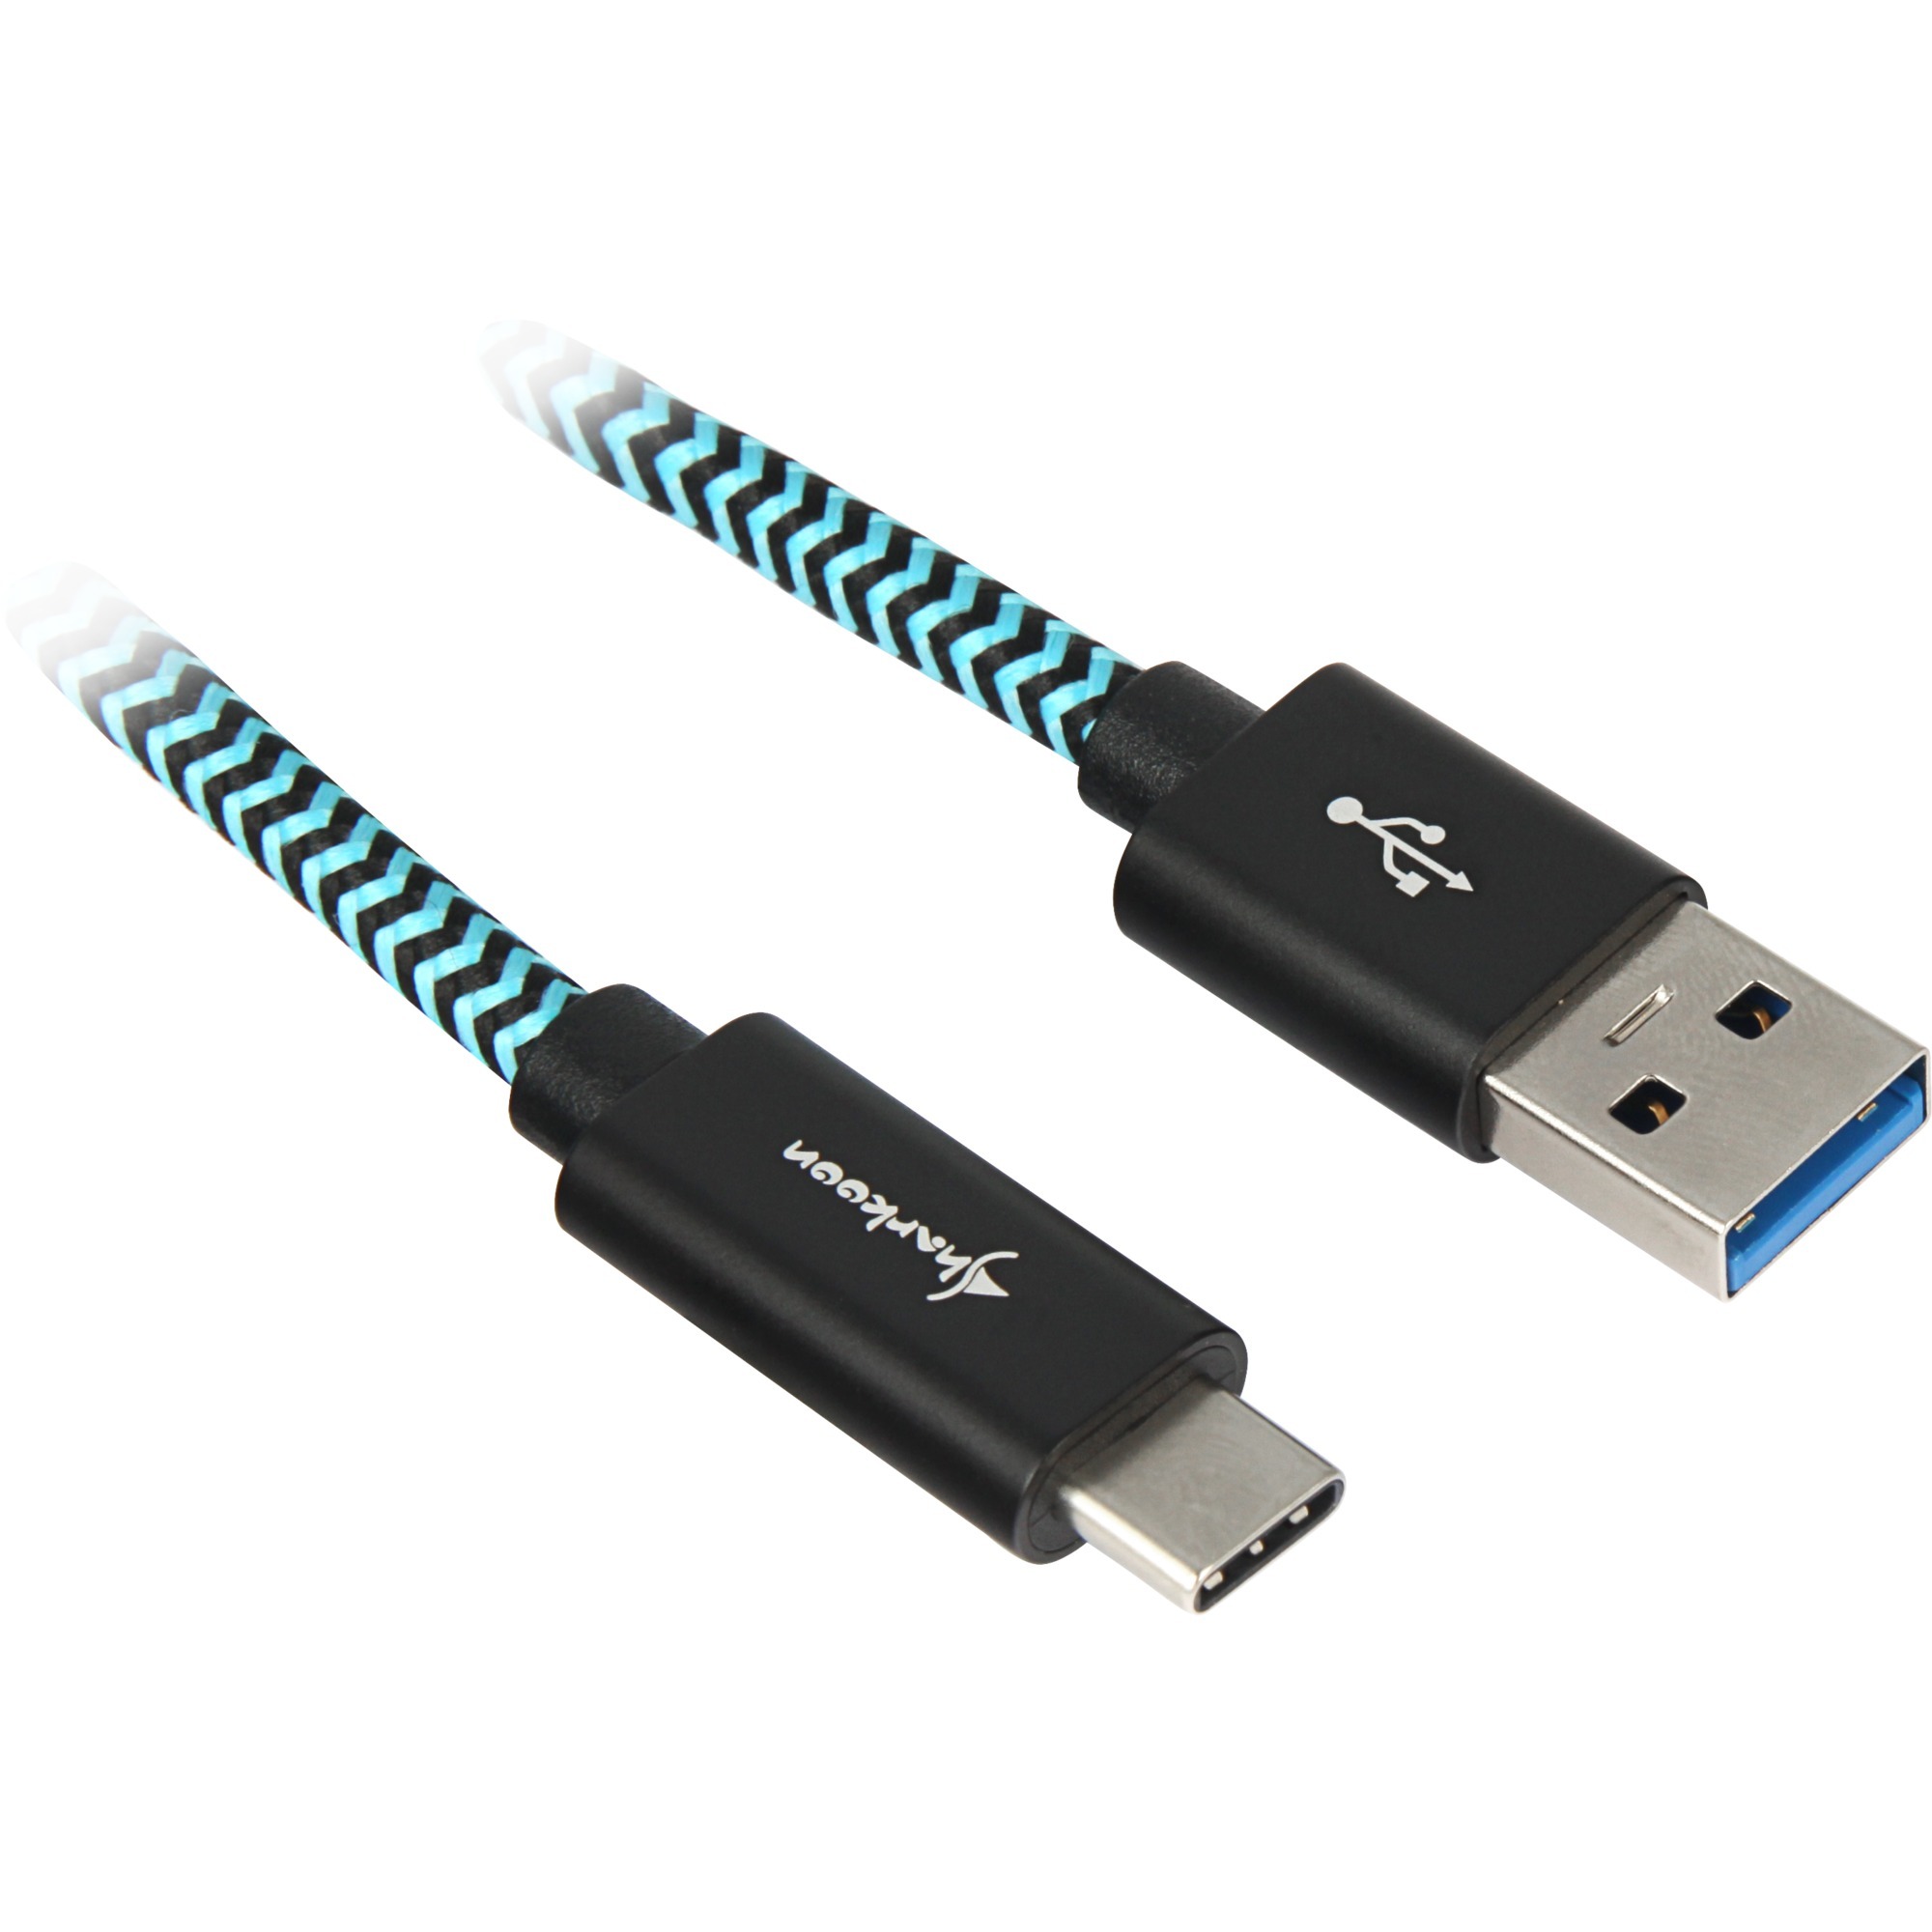 Image of Alternate - Kabel USB A 3.2 Stecker > USB-C Stecker (Alu + Braid) online einkaufen bei Alternate